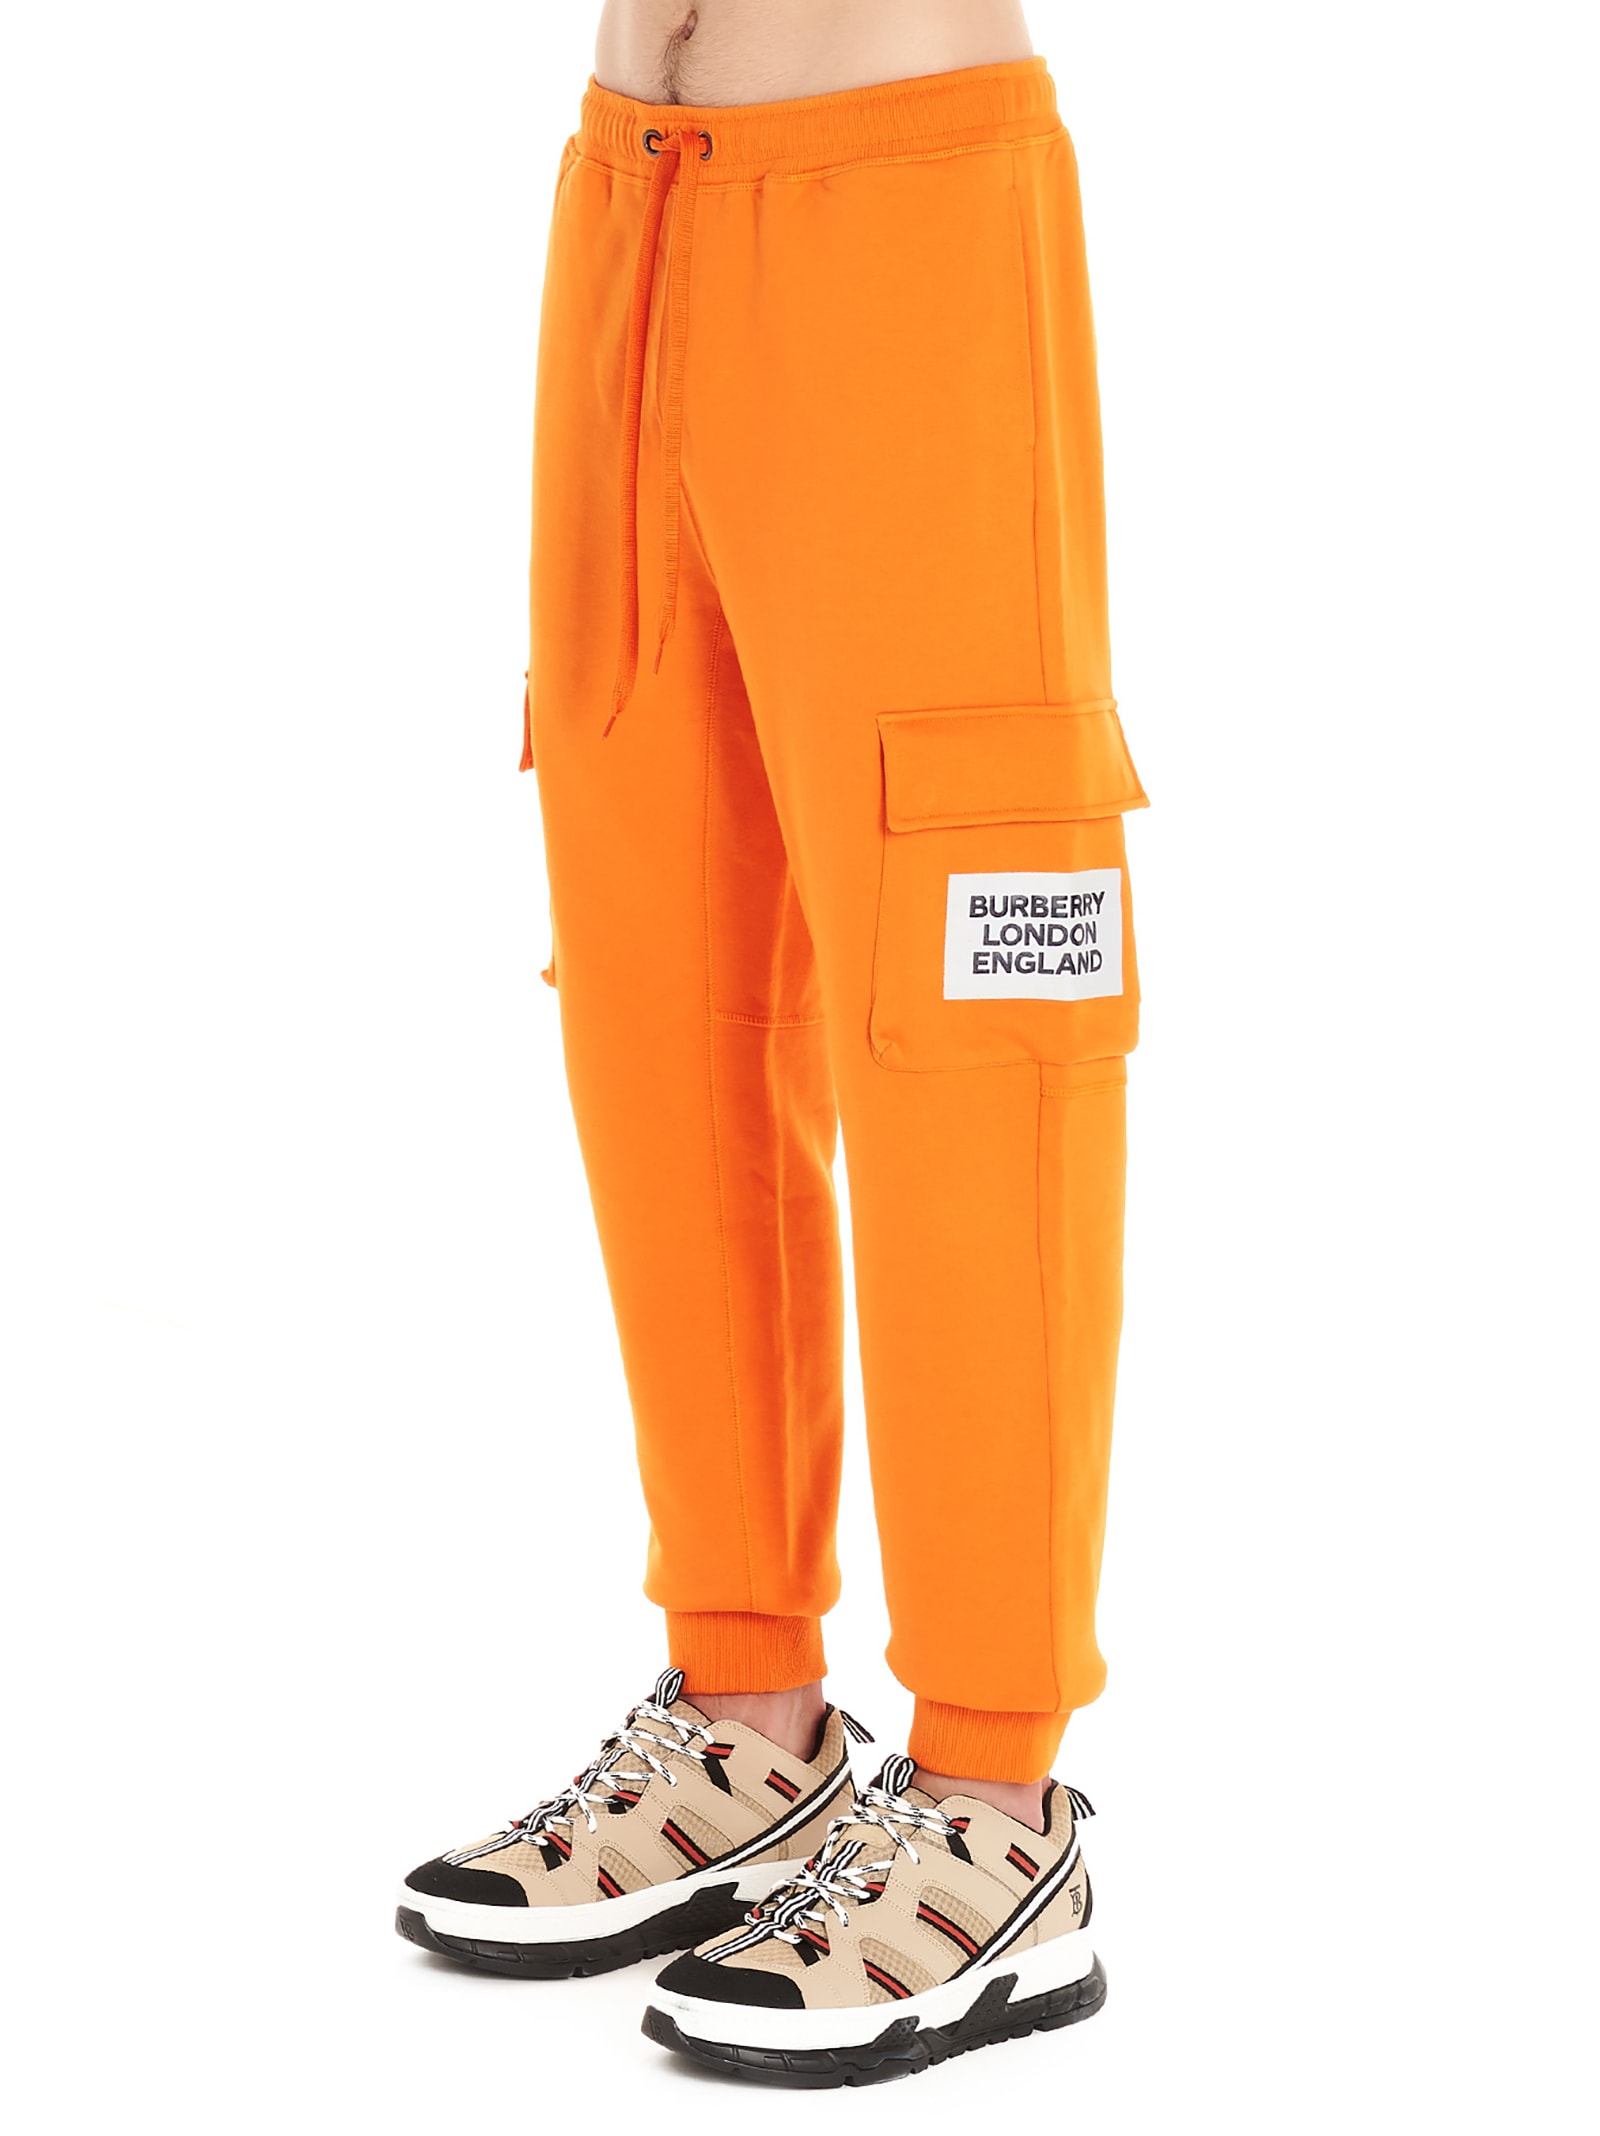 burberry pants orange